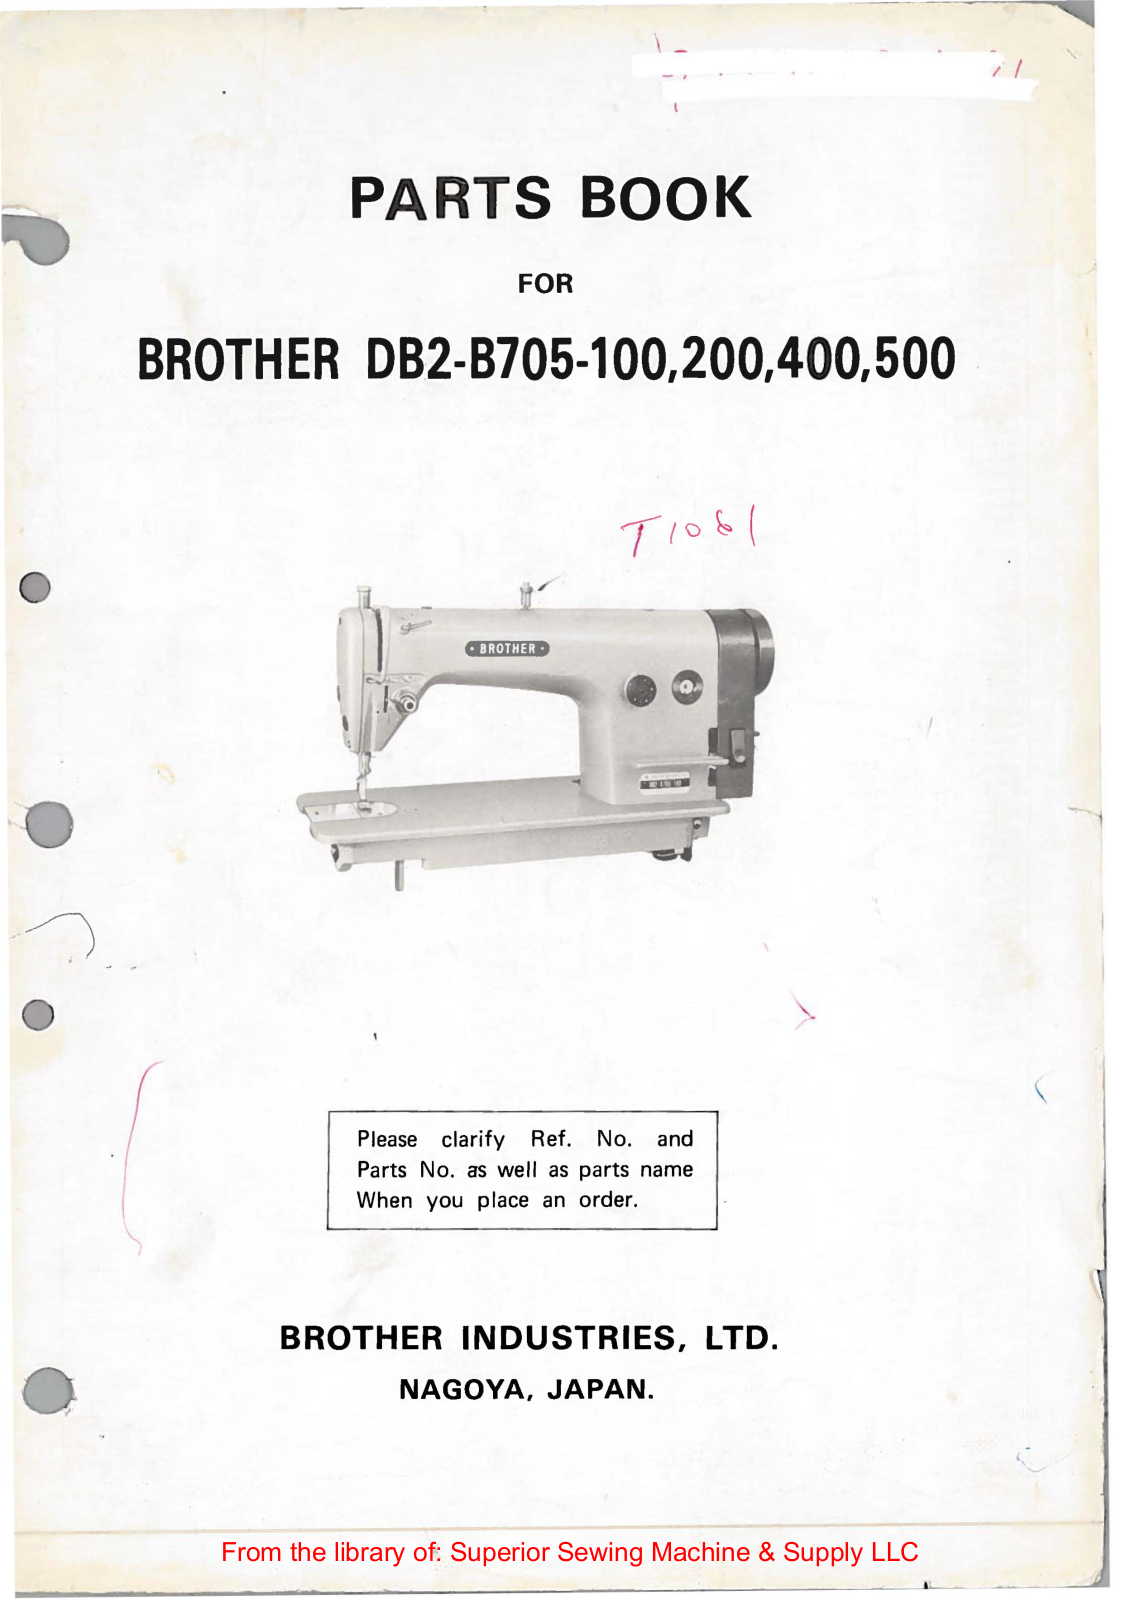 Brother DB2-B705-100, DB2-B705-200, DB2-B705-400, DB2-B705-500 Manual